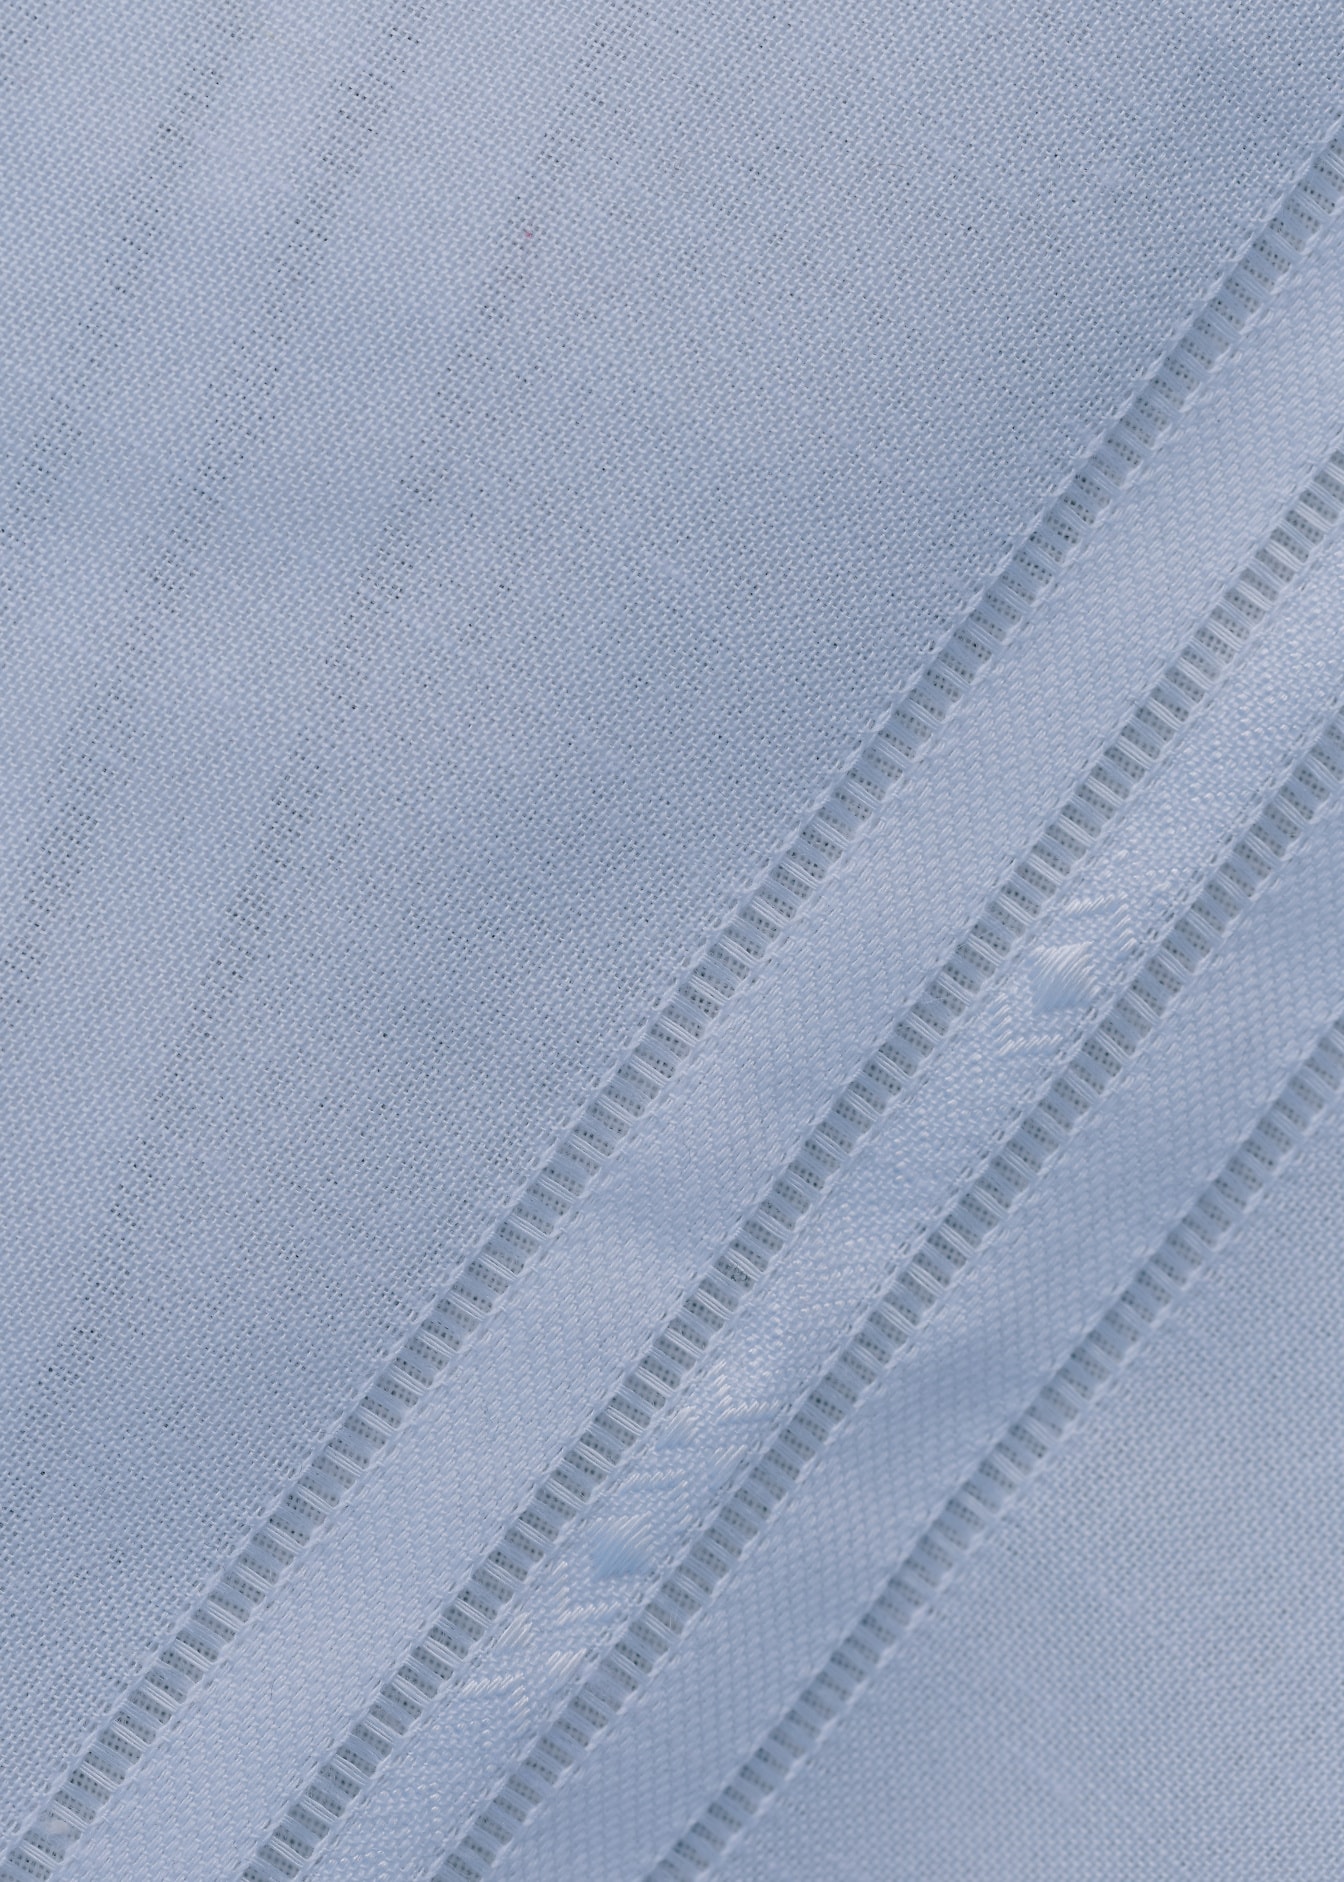 Tekstura bijele pamučne tkanine izbliza s dijagonalnim linijama